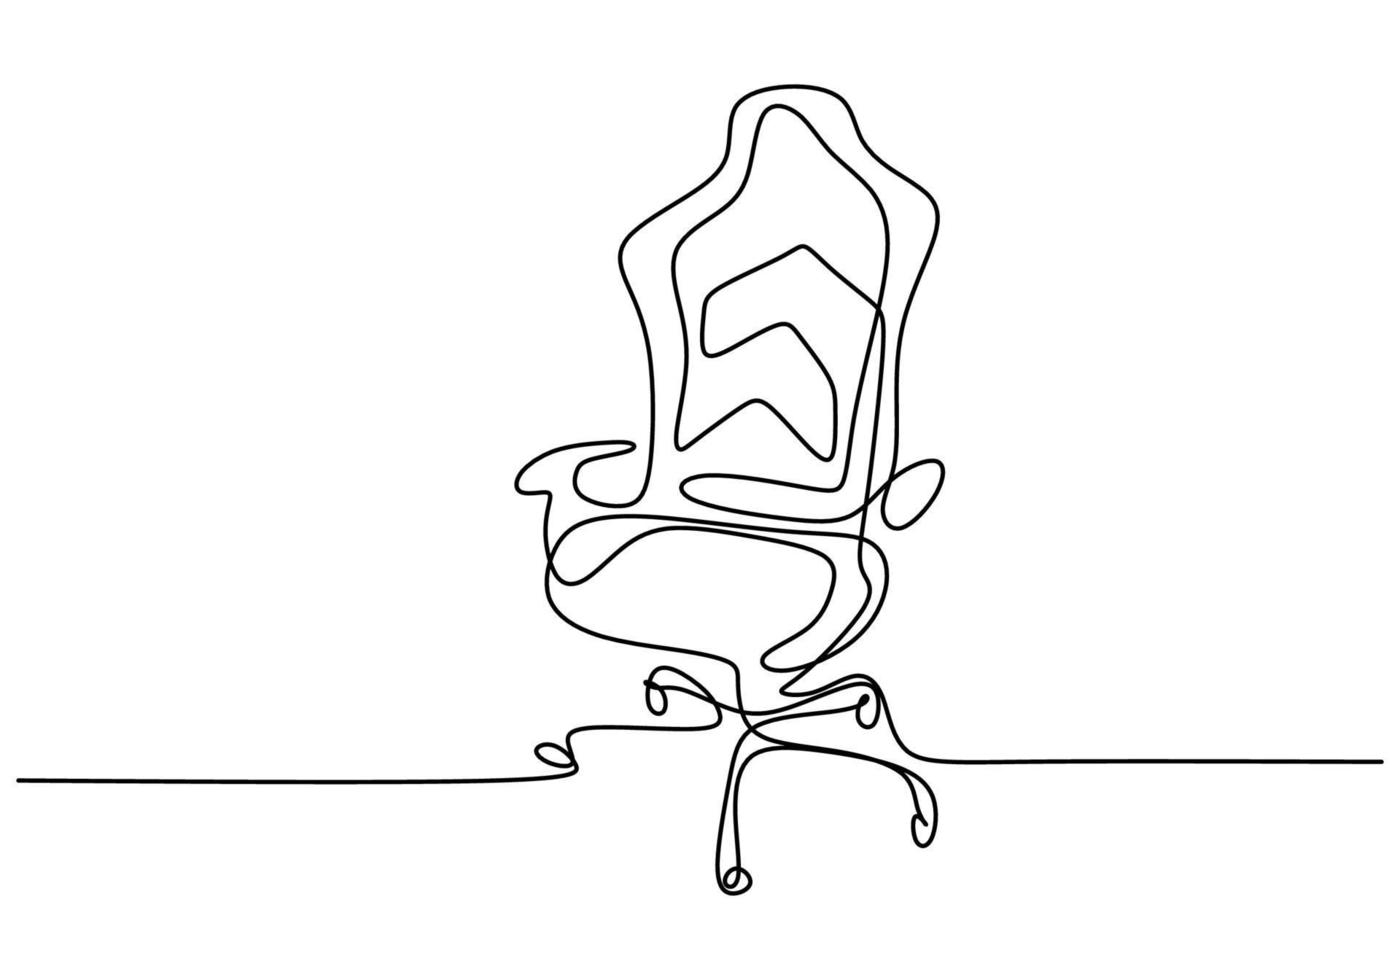 kontinuierlicher Bürostuhl mit einer Strichzeichnung. moderner Arbeitsstuhl lokalisiert auf weißem Hintergrund. bequemer Bürostuhl für minimalistisches Design. stilvolles Büroinnenraumkonzept. Vektorillustration vektor